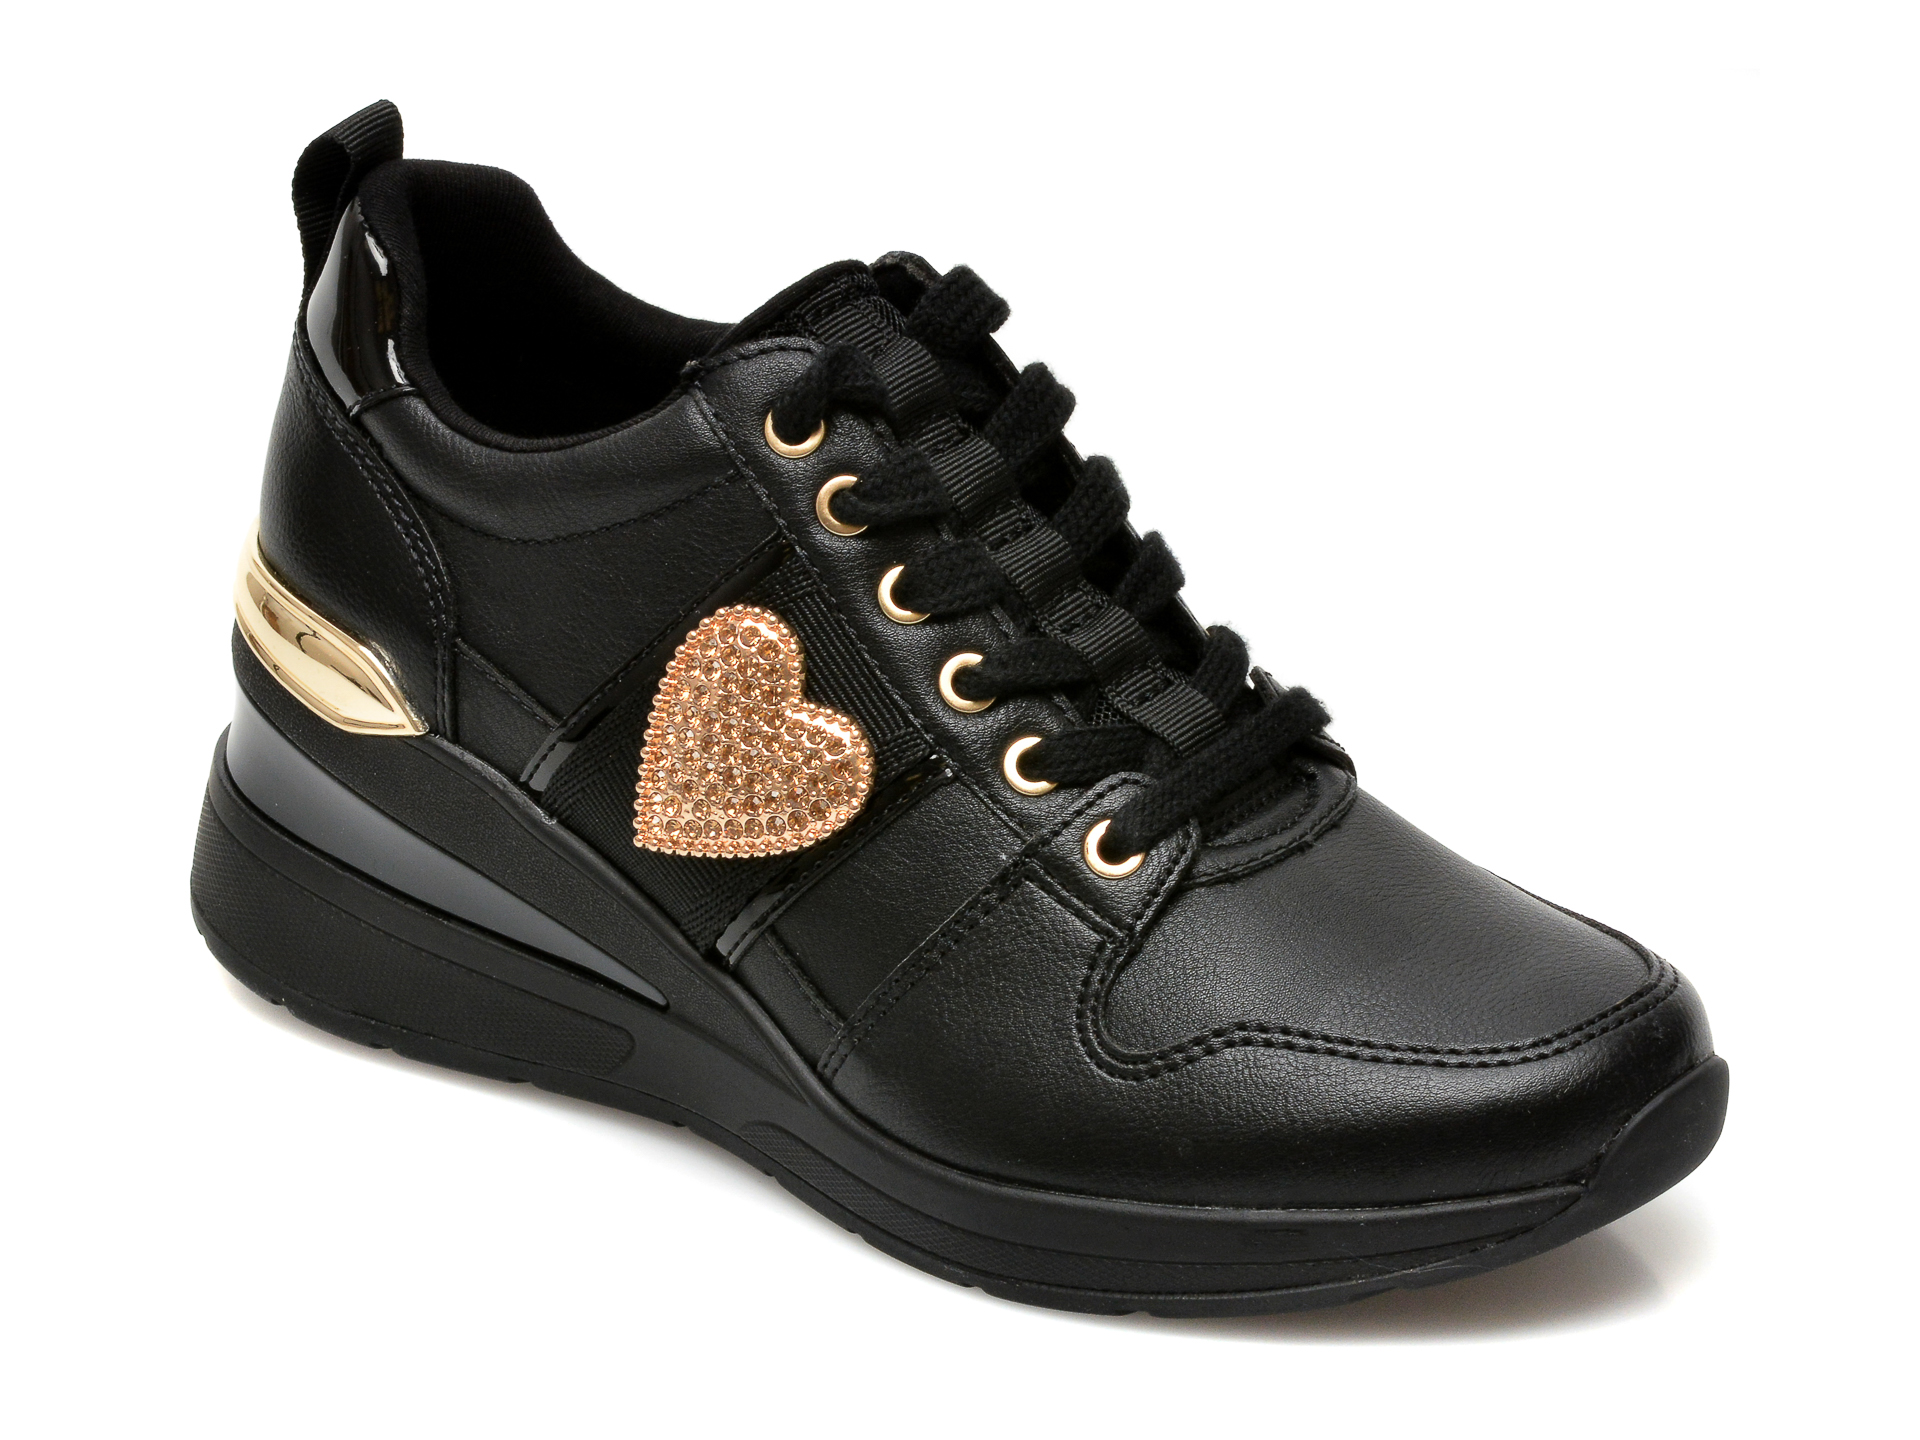 Pantofi ALDO negri, Zalle001, din piele ecologica Aldo Aldo